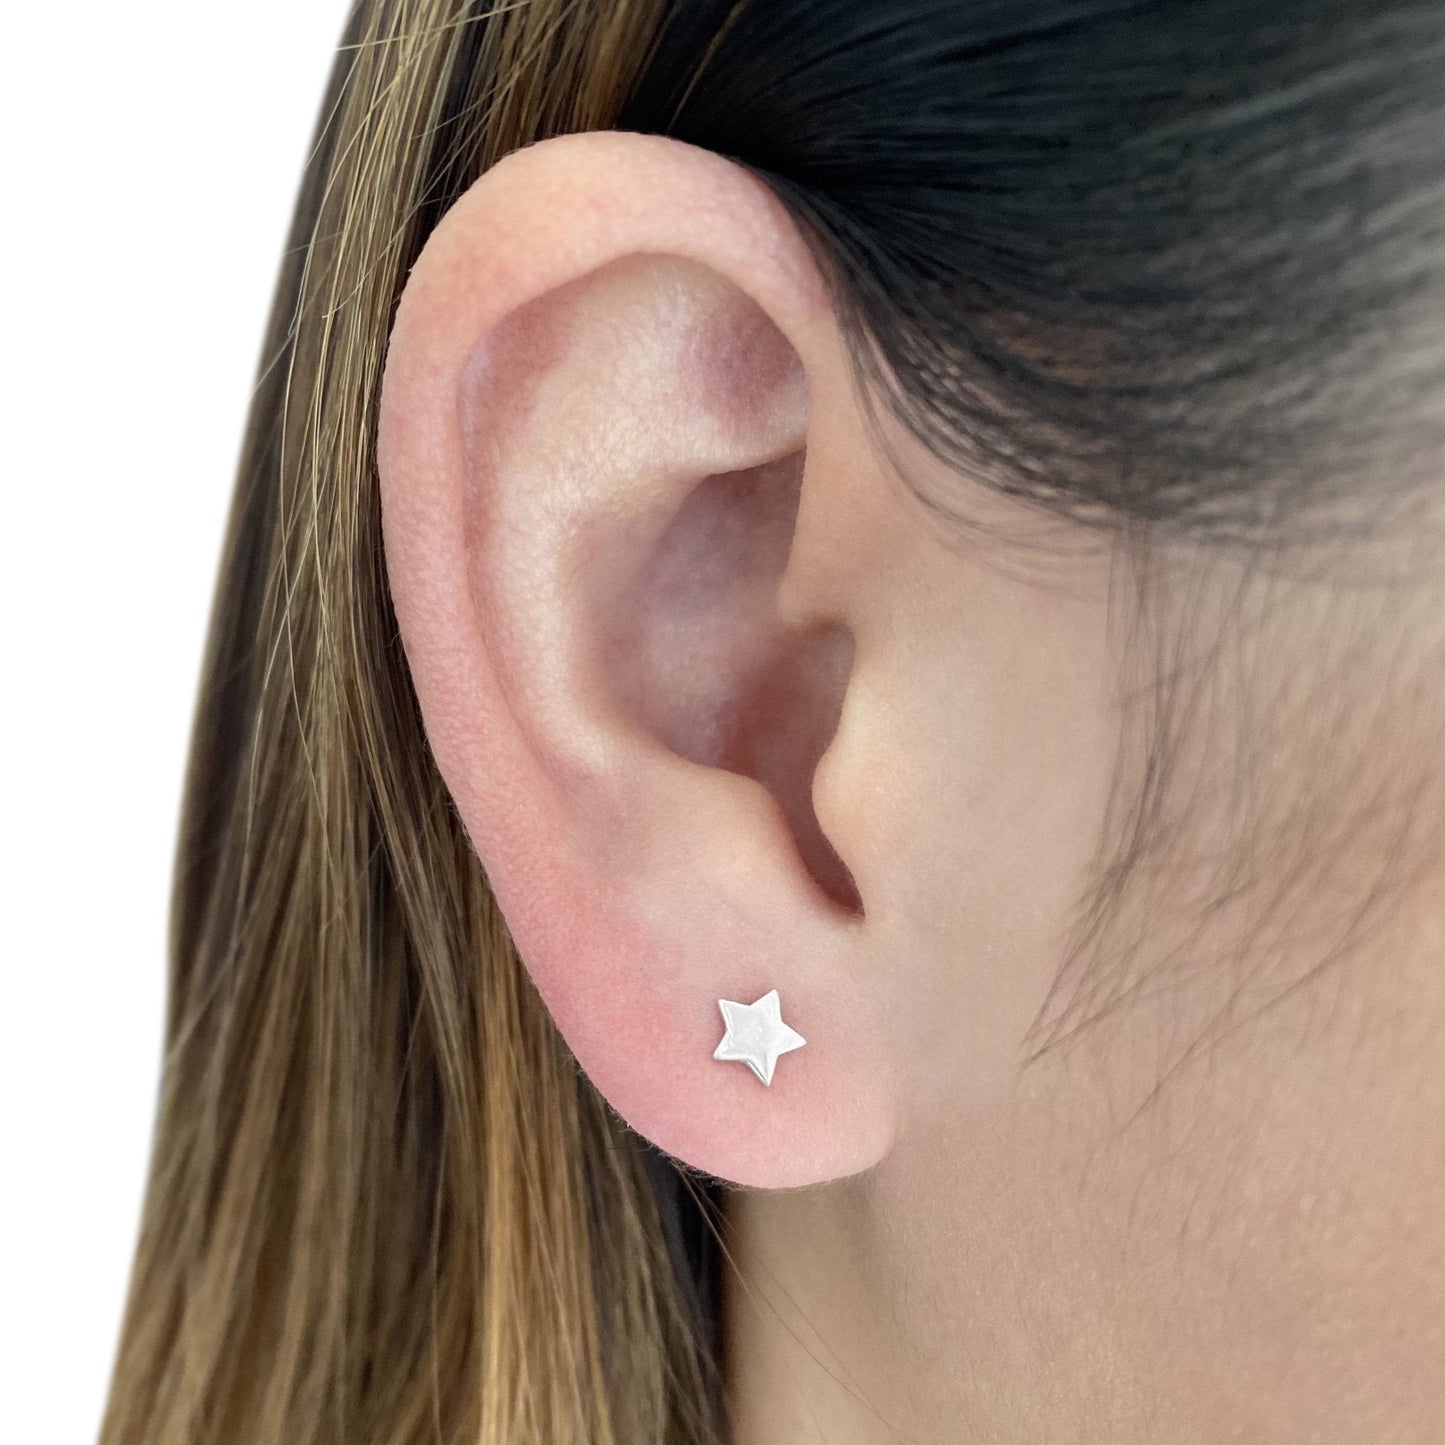 Star Earring in Sterling Silver (single earring) - Mazi New York-jewelry